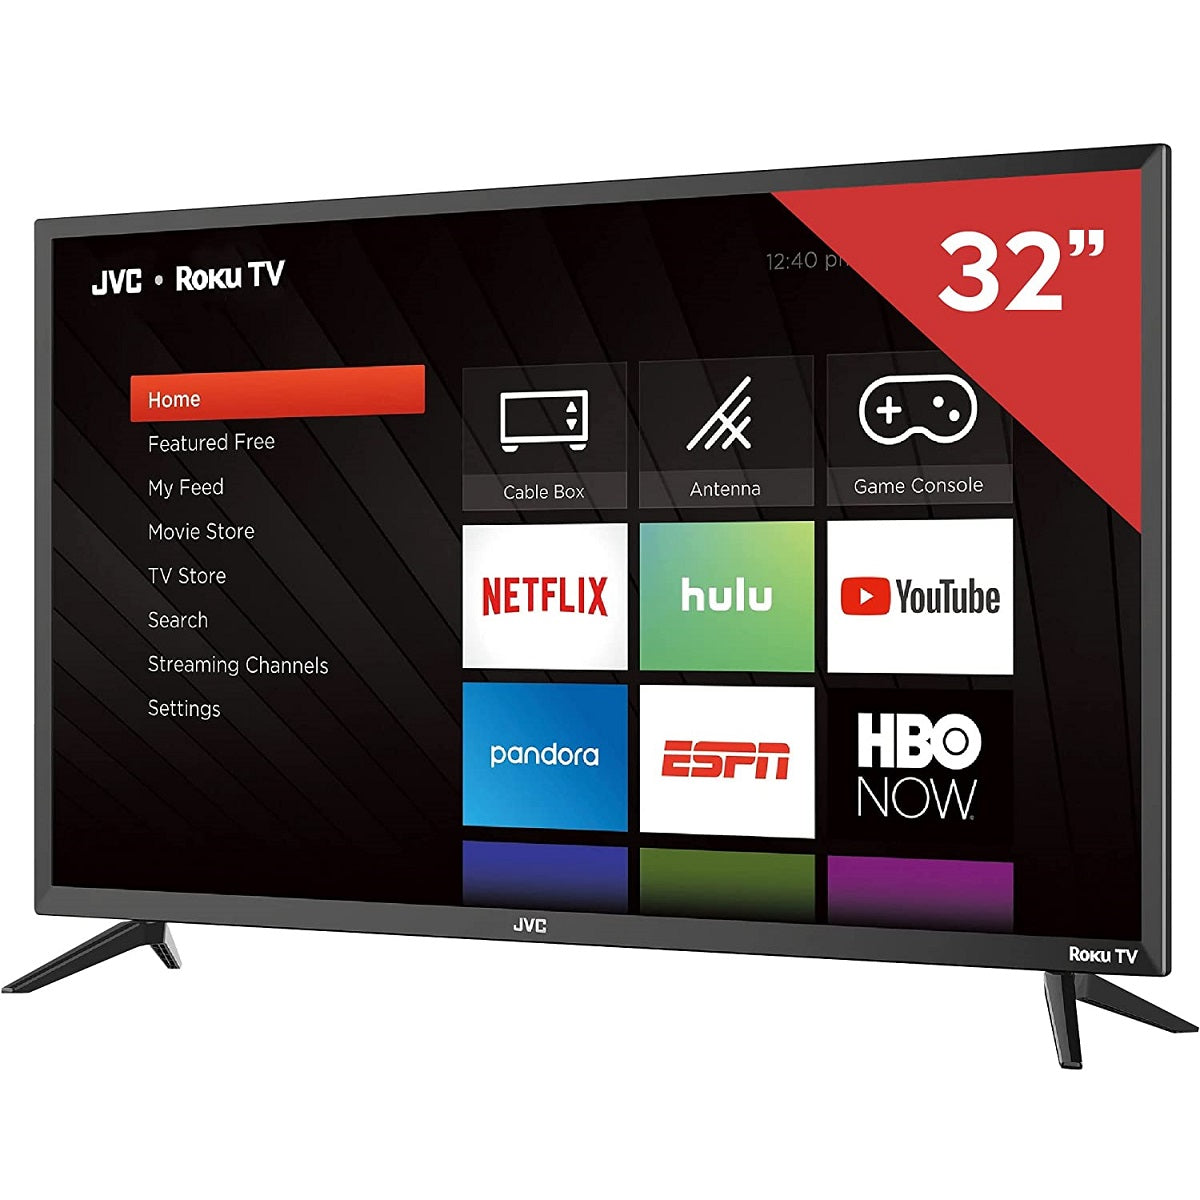 Pantalla LED JVC 32" Smart TV SI32R